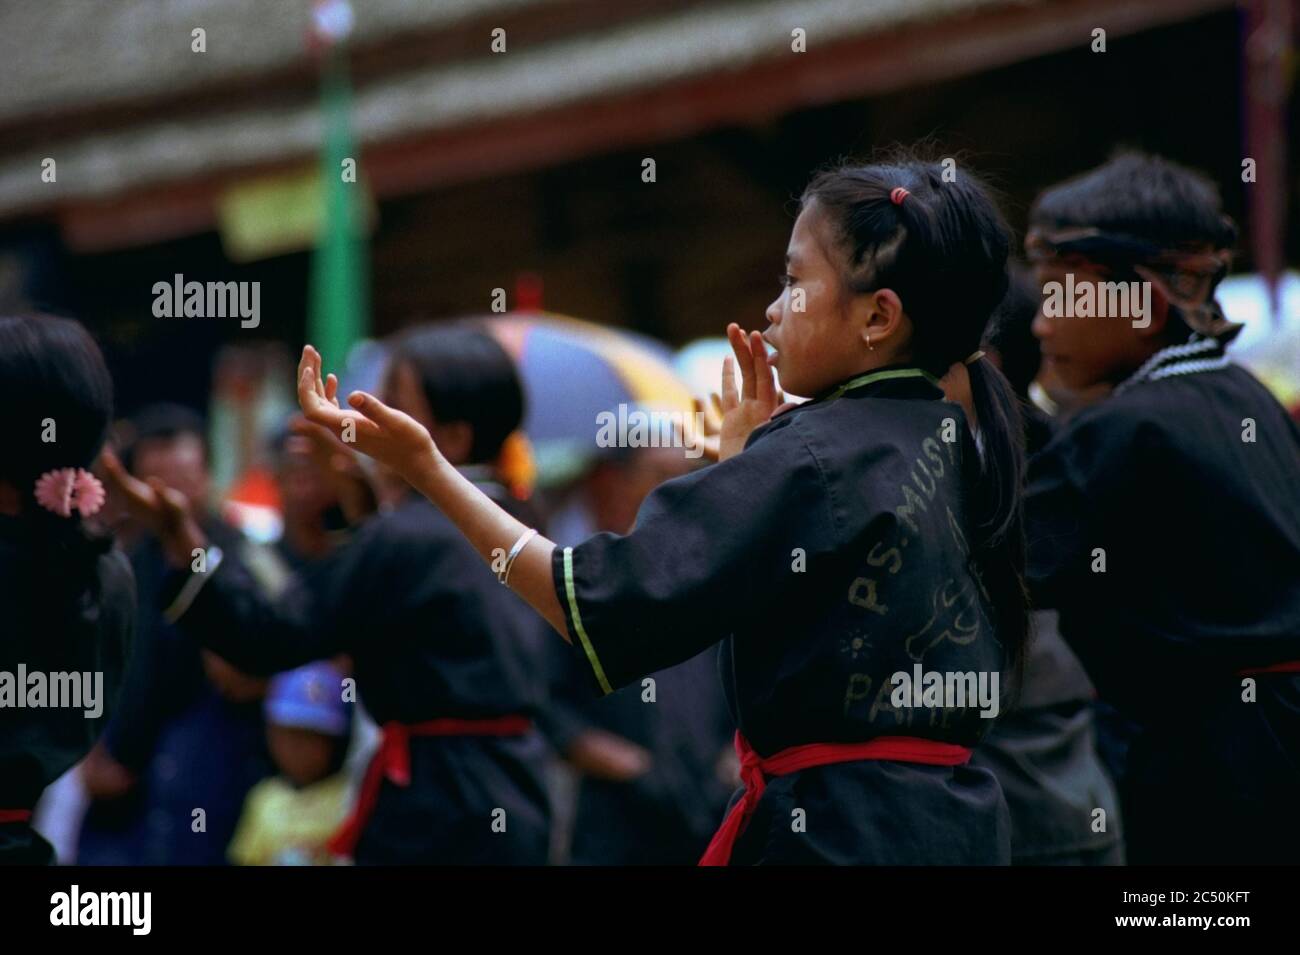 Exposición infantil de silat Pencak (arte marcial indonesio) durante el festival de cosecha de 2004 en la aldea de Ciptagelar, en la regencia de Sukabumi, provincia de Java Occidental, Indonesia. Agosto de 2004. Foto de archivo. Foto de stock